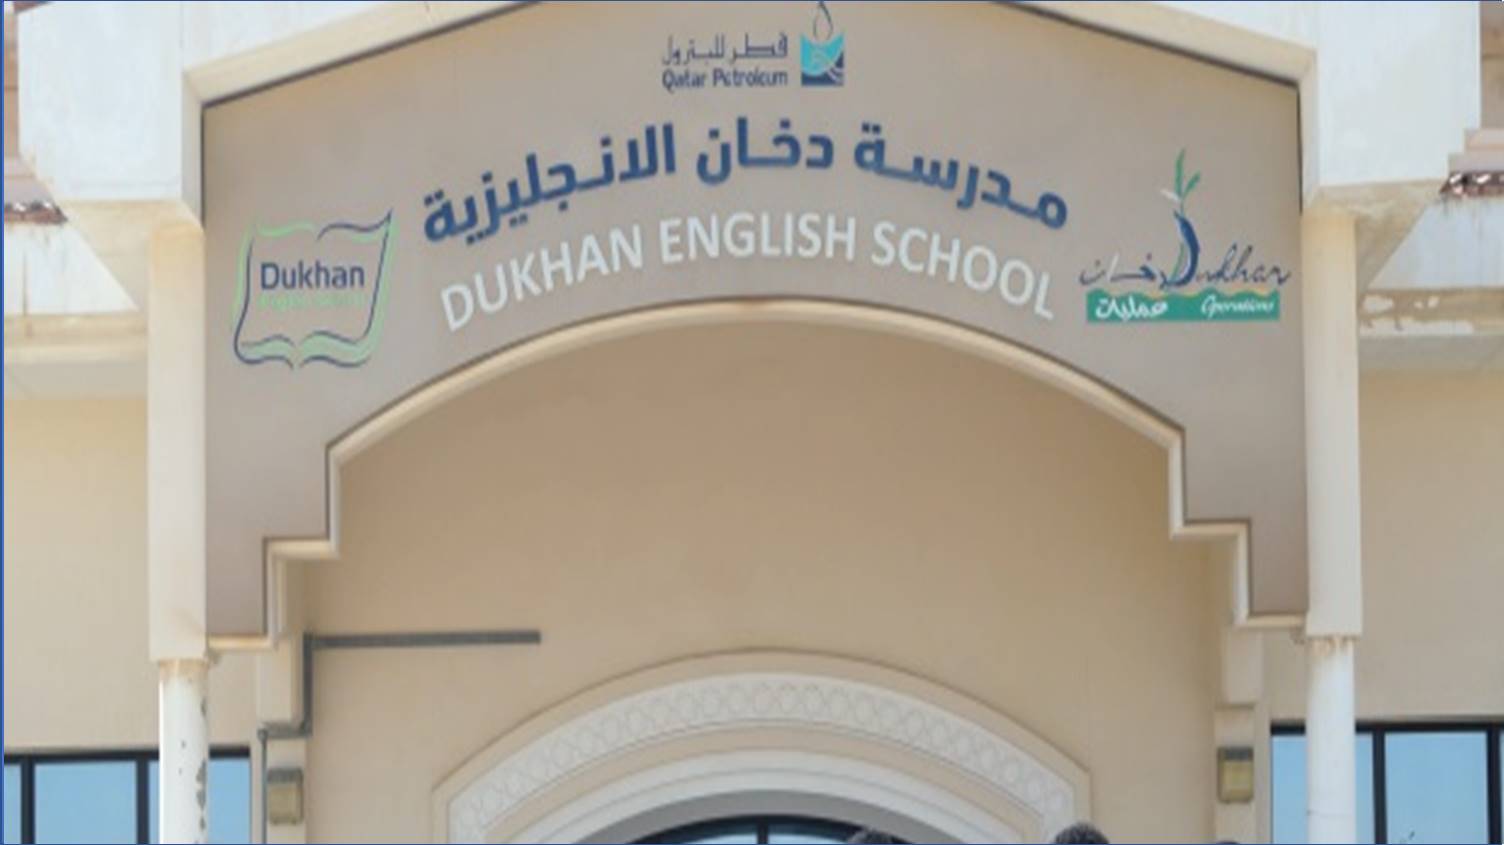 وظائف مدرسة دخان الانجليزية في قطر لمختلف التخصصات